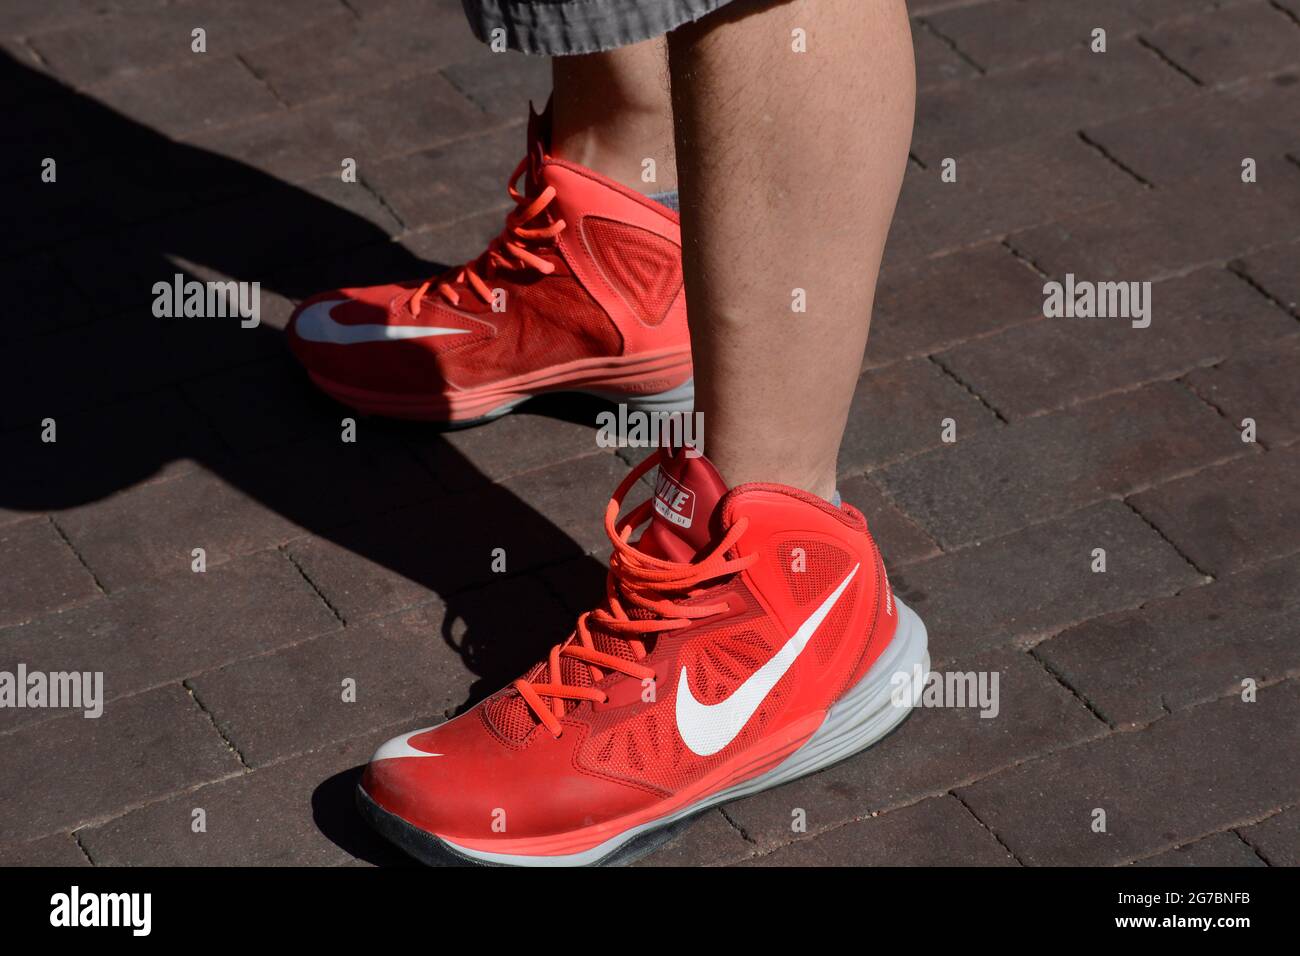 Nike tennis shoes immagini e fotografie stock ad alta risoluzione - Alamy